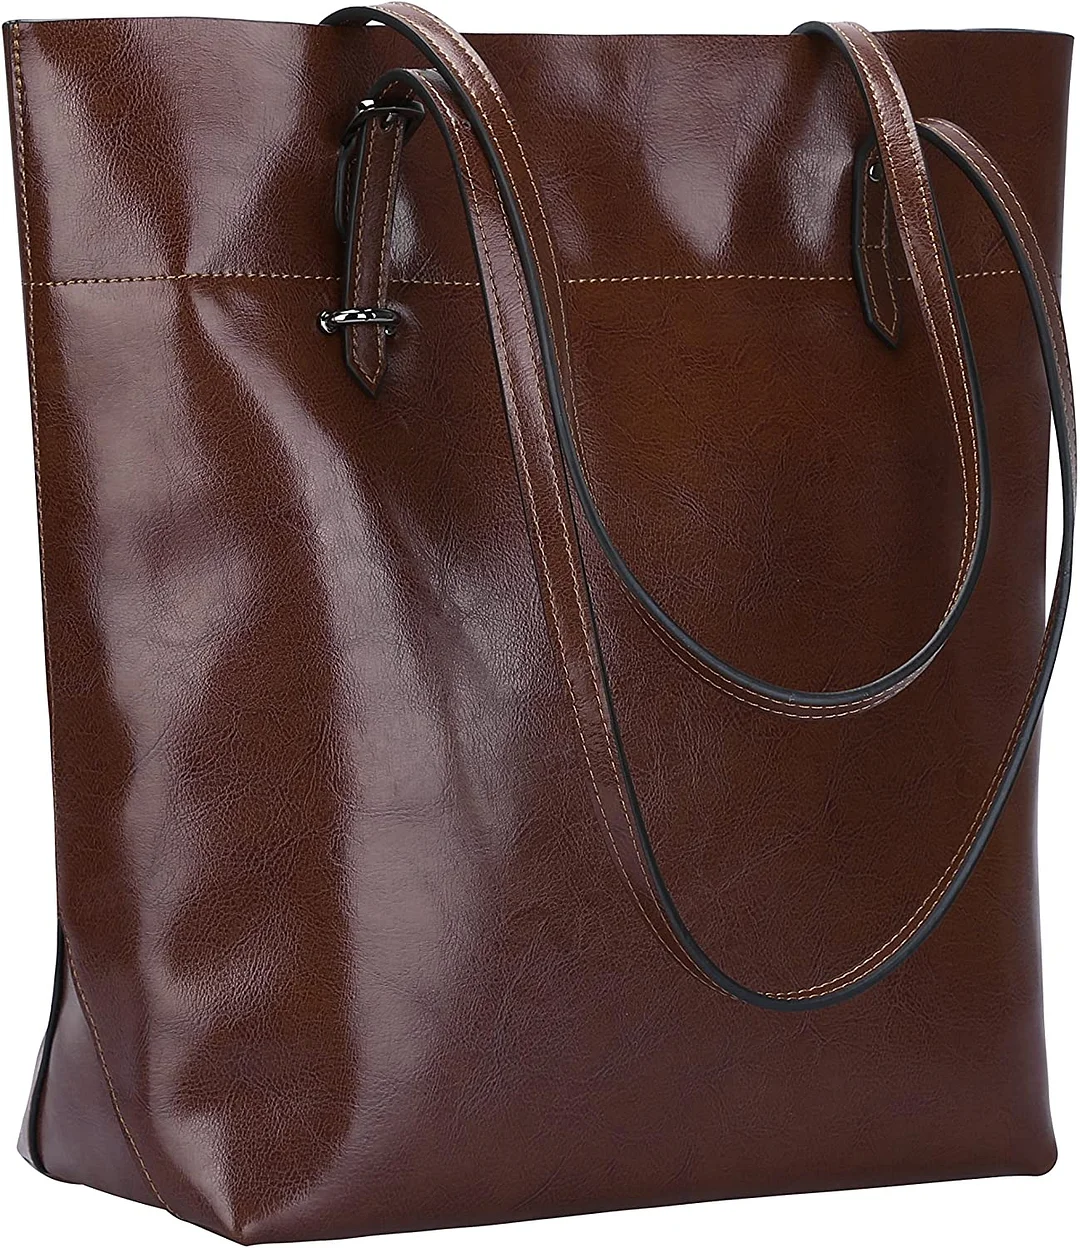 Vintage Genuine Leather Tote Shoulder Bag Handbag Big Large Capacity Upgraded